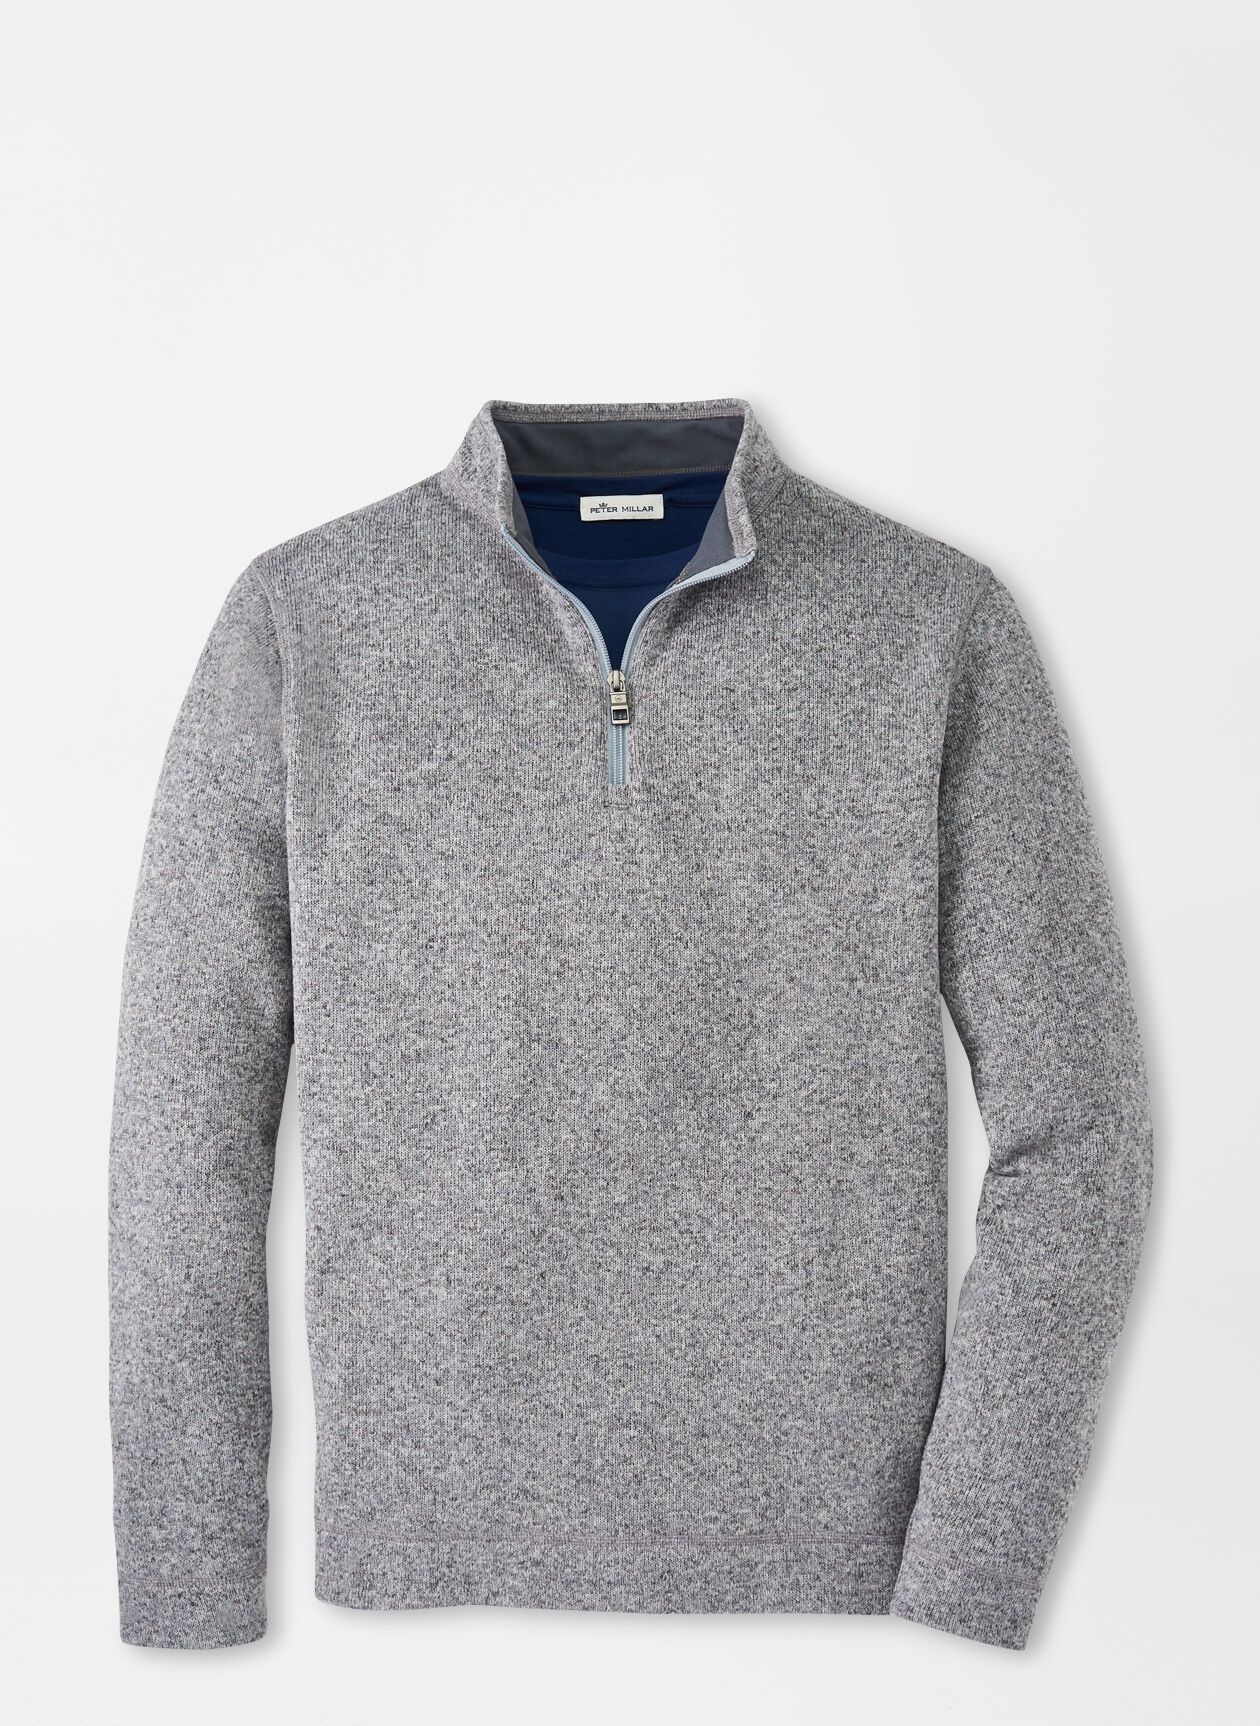 Crown Sweater Fleece Quarter Zip | Peter Millar